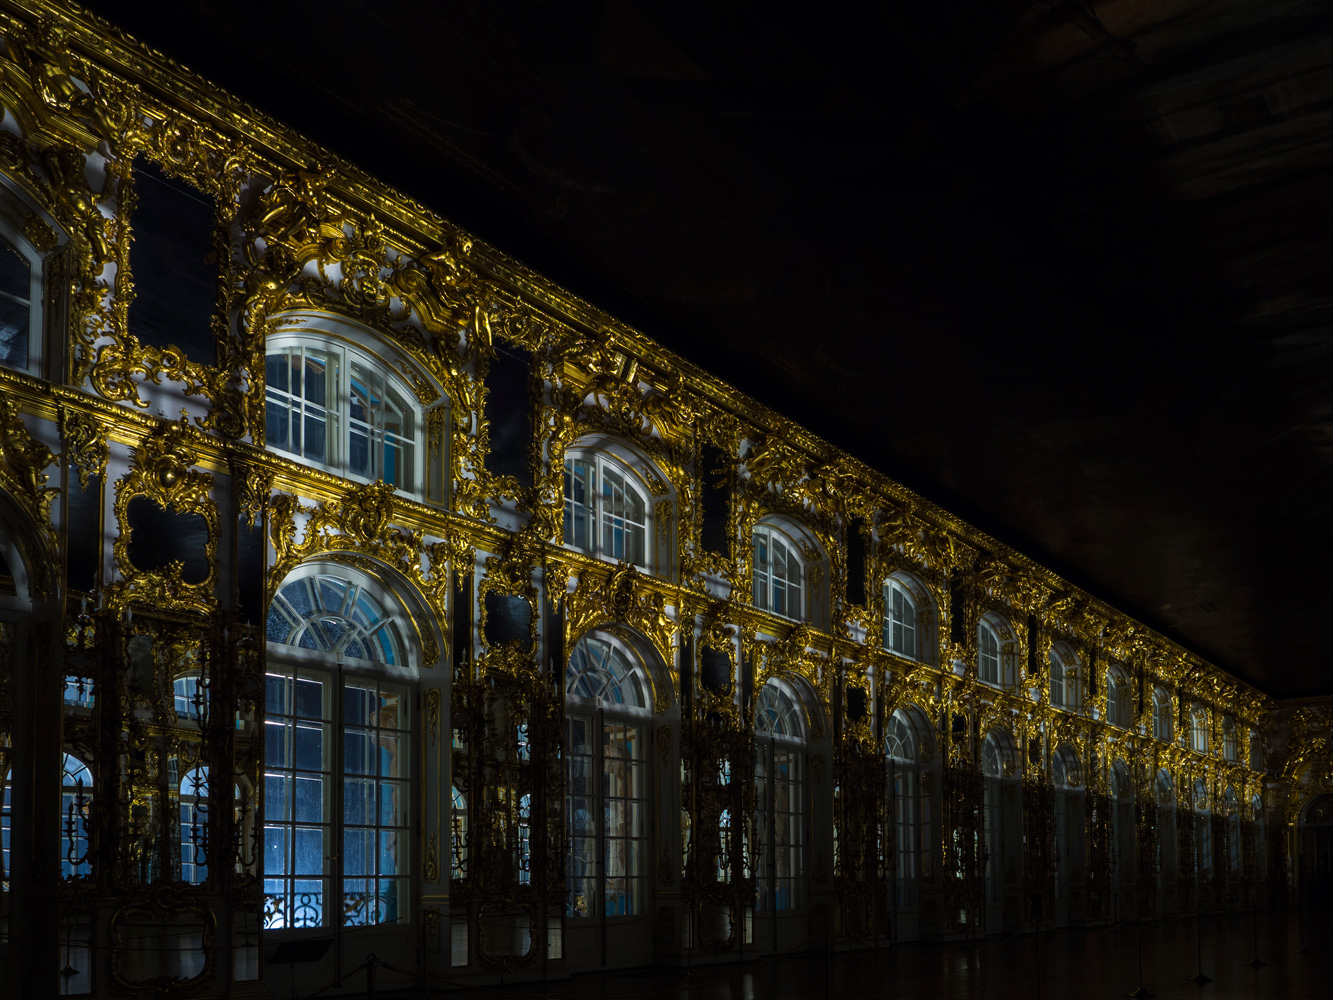 Екатерининский дворец в санкт петербурге фото снаружи крупным планом